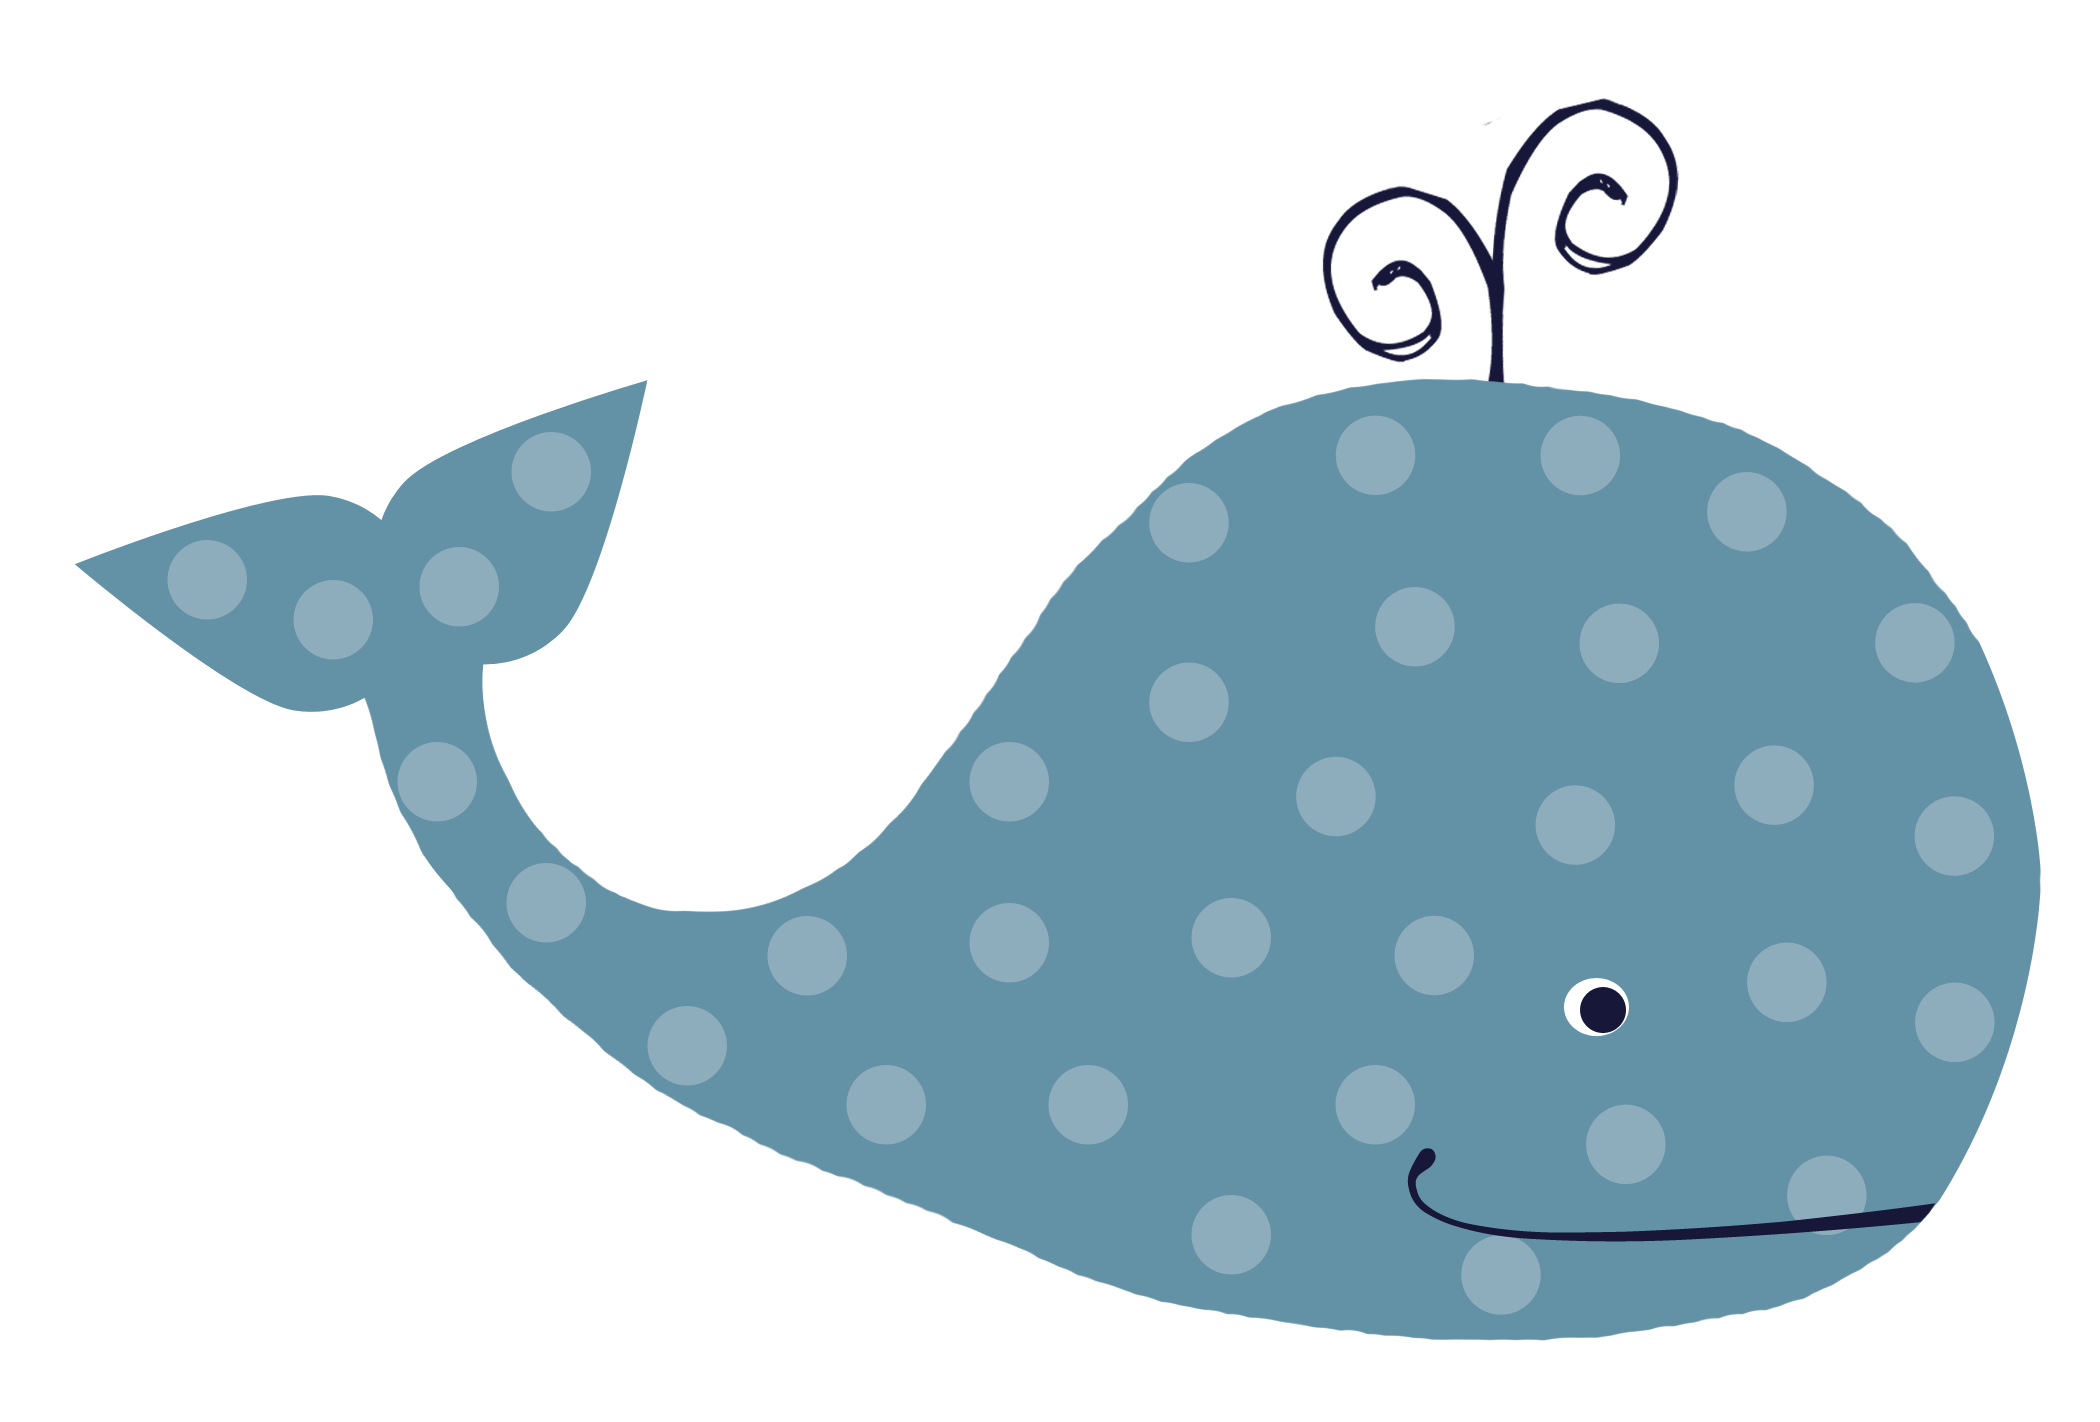 Cute Blue Whale Clip Art